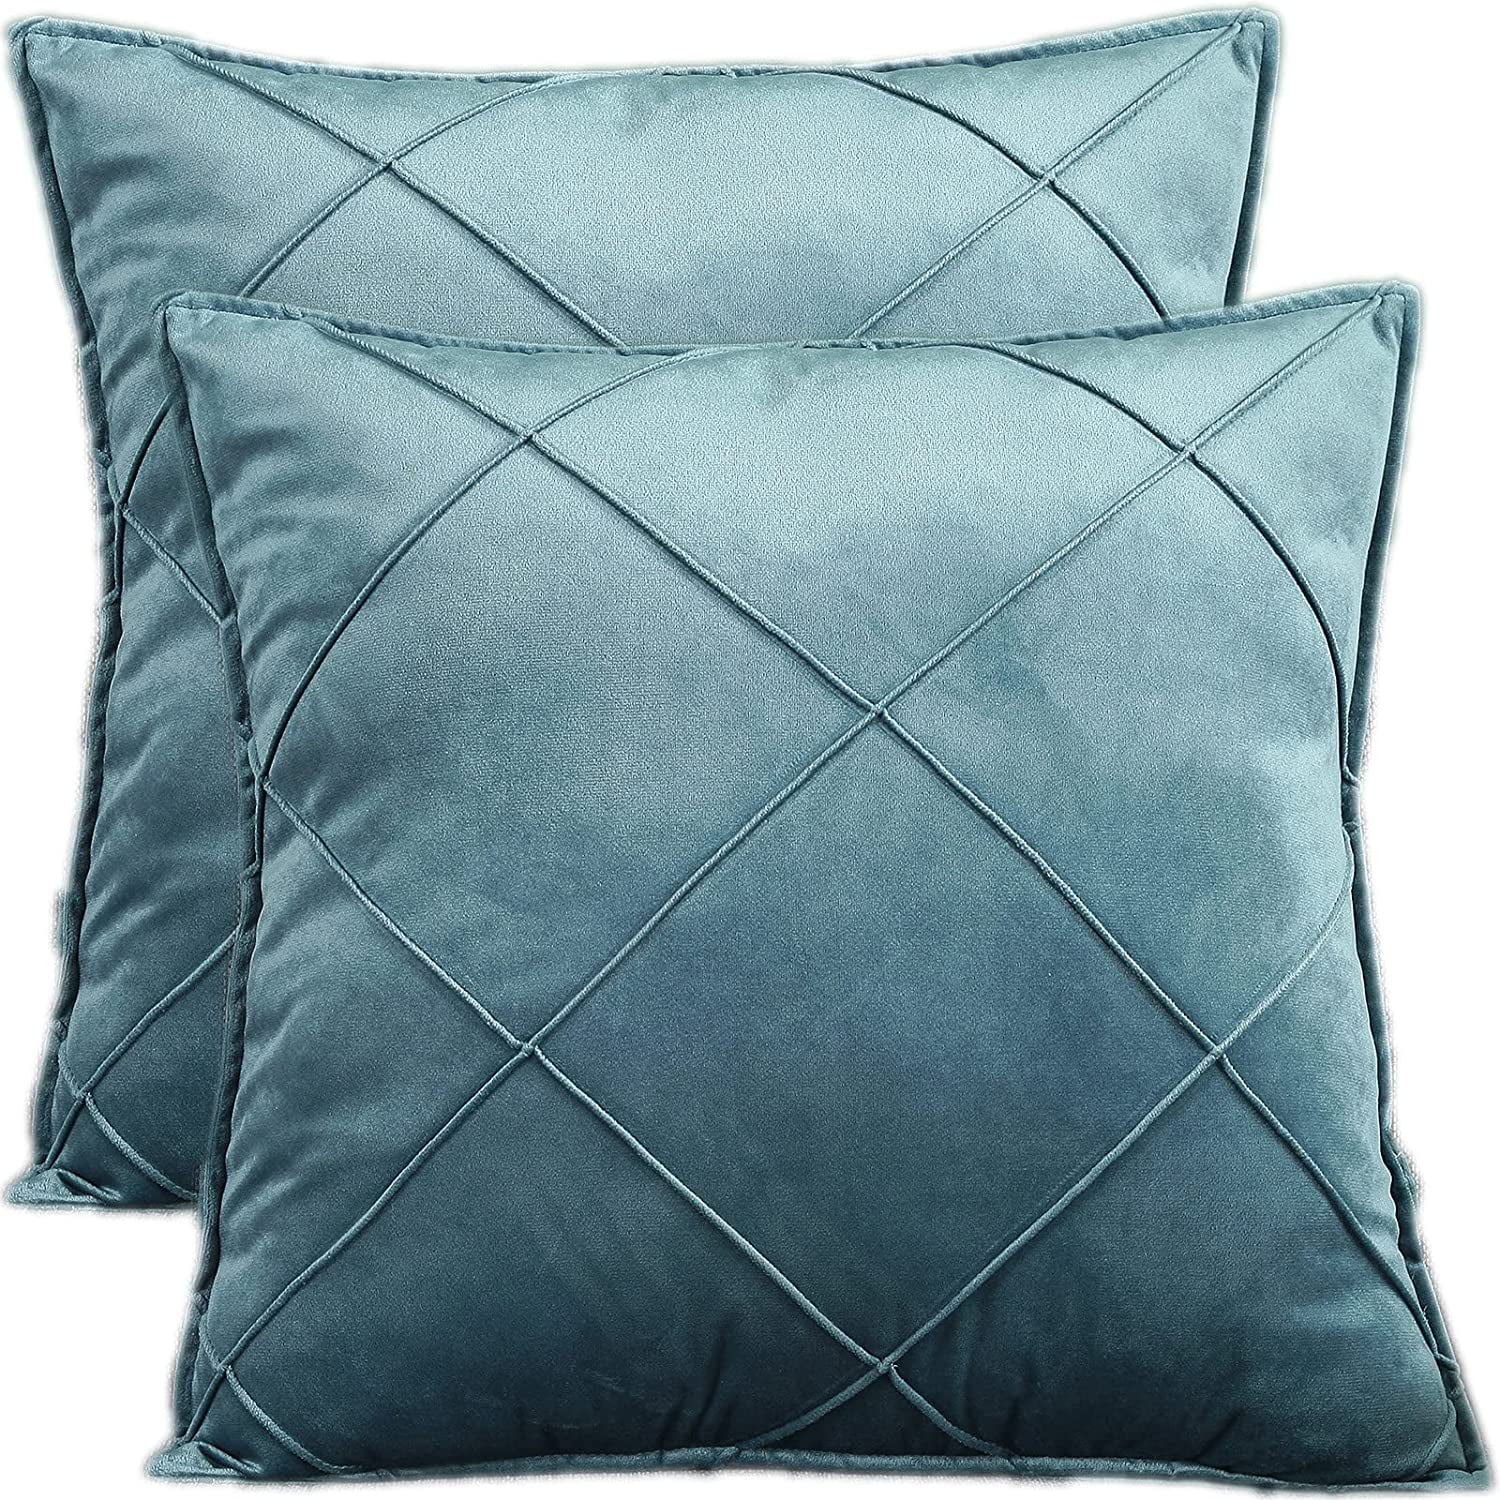 18" Nordic Peacock Pillow Case Sofa Bedroom Home Decor Throw Linen Cushion Cover 